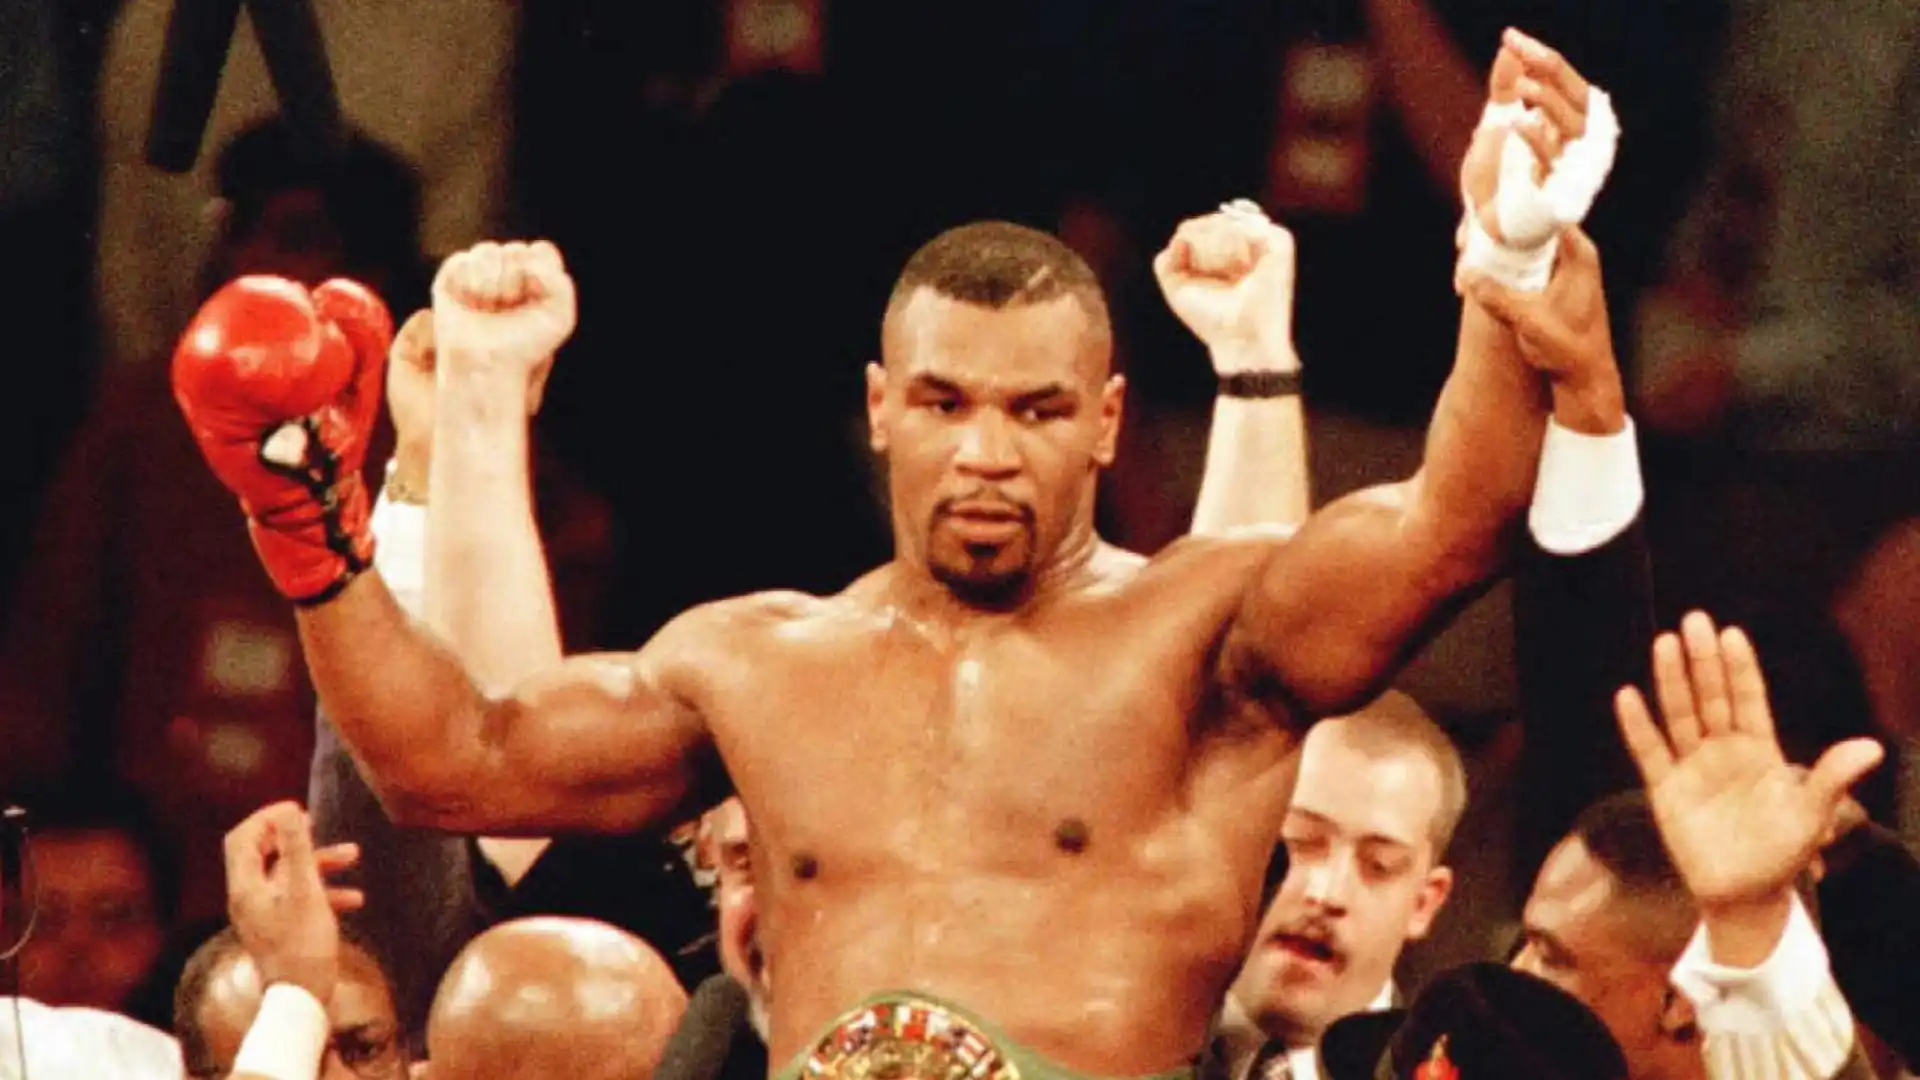 1996: Mike Tyson (pugilato), guadagni totali stimati 75 milioni di dollari